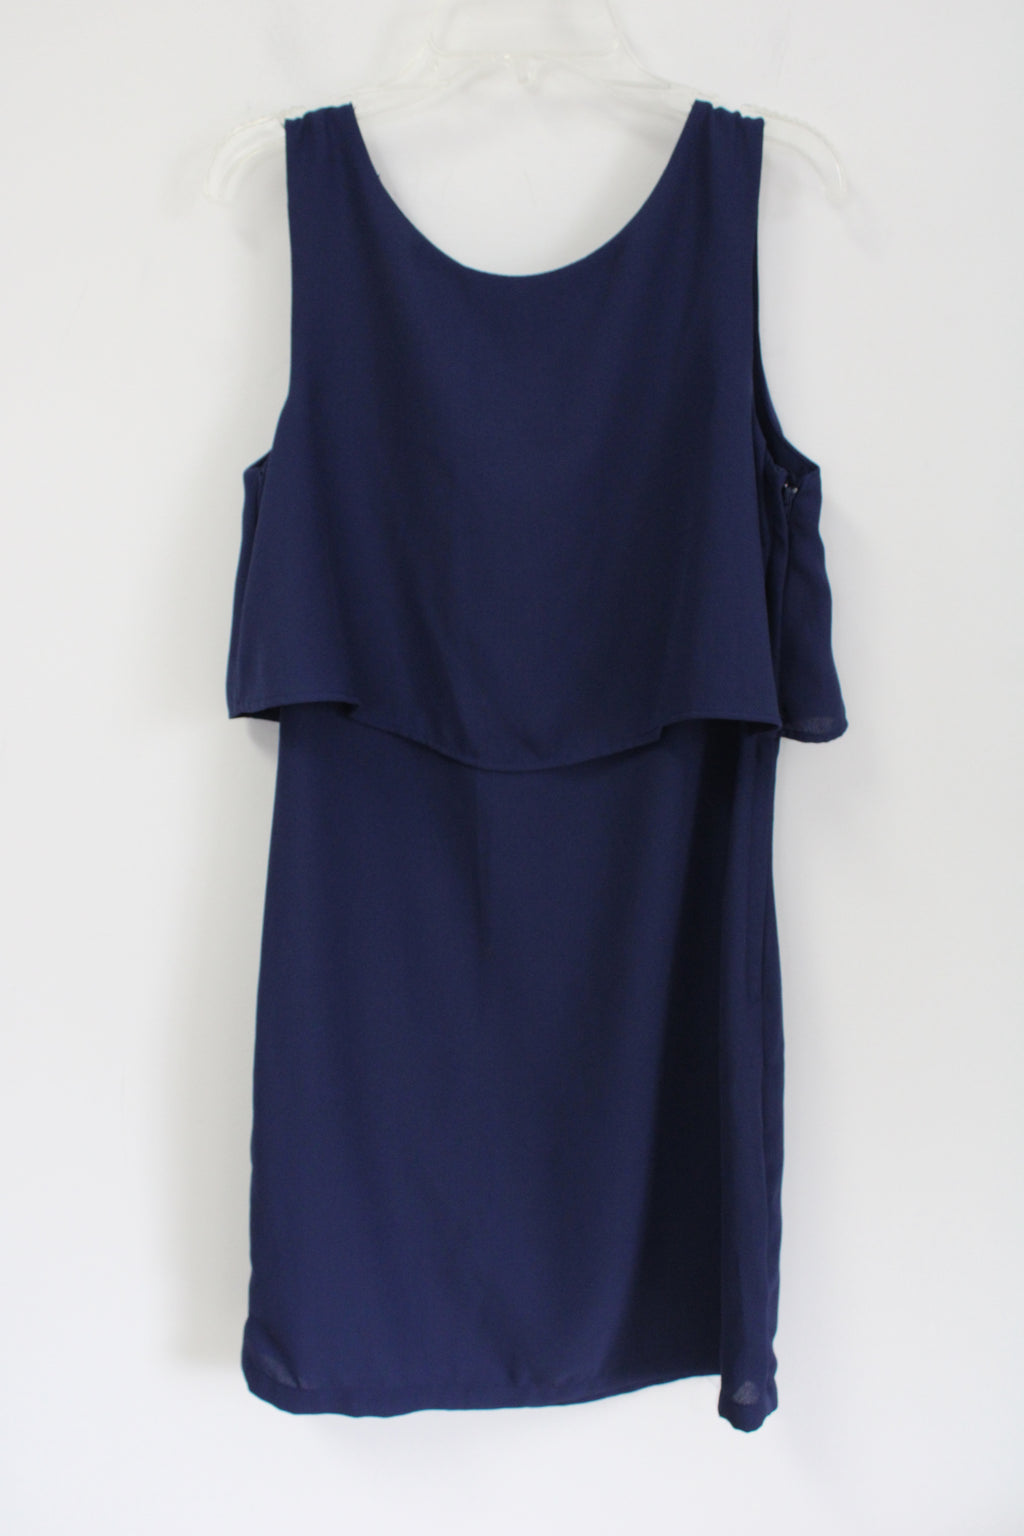 H&M Navy Blue Chiffon Dress | 6